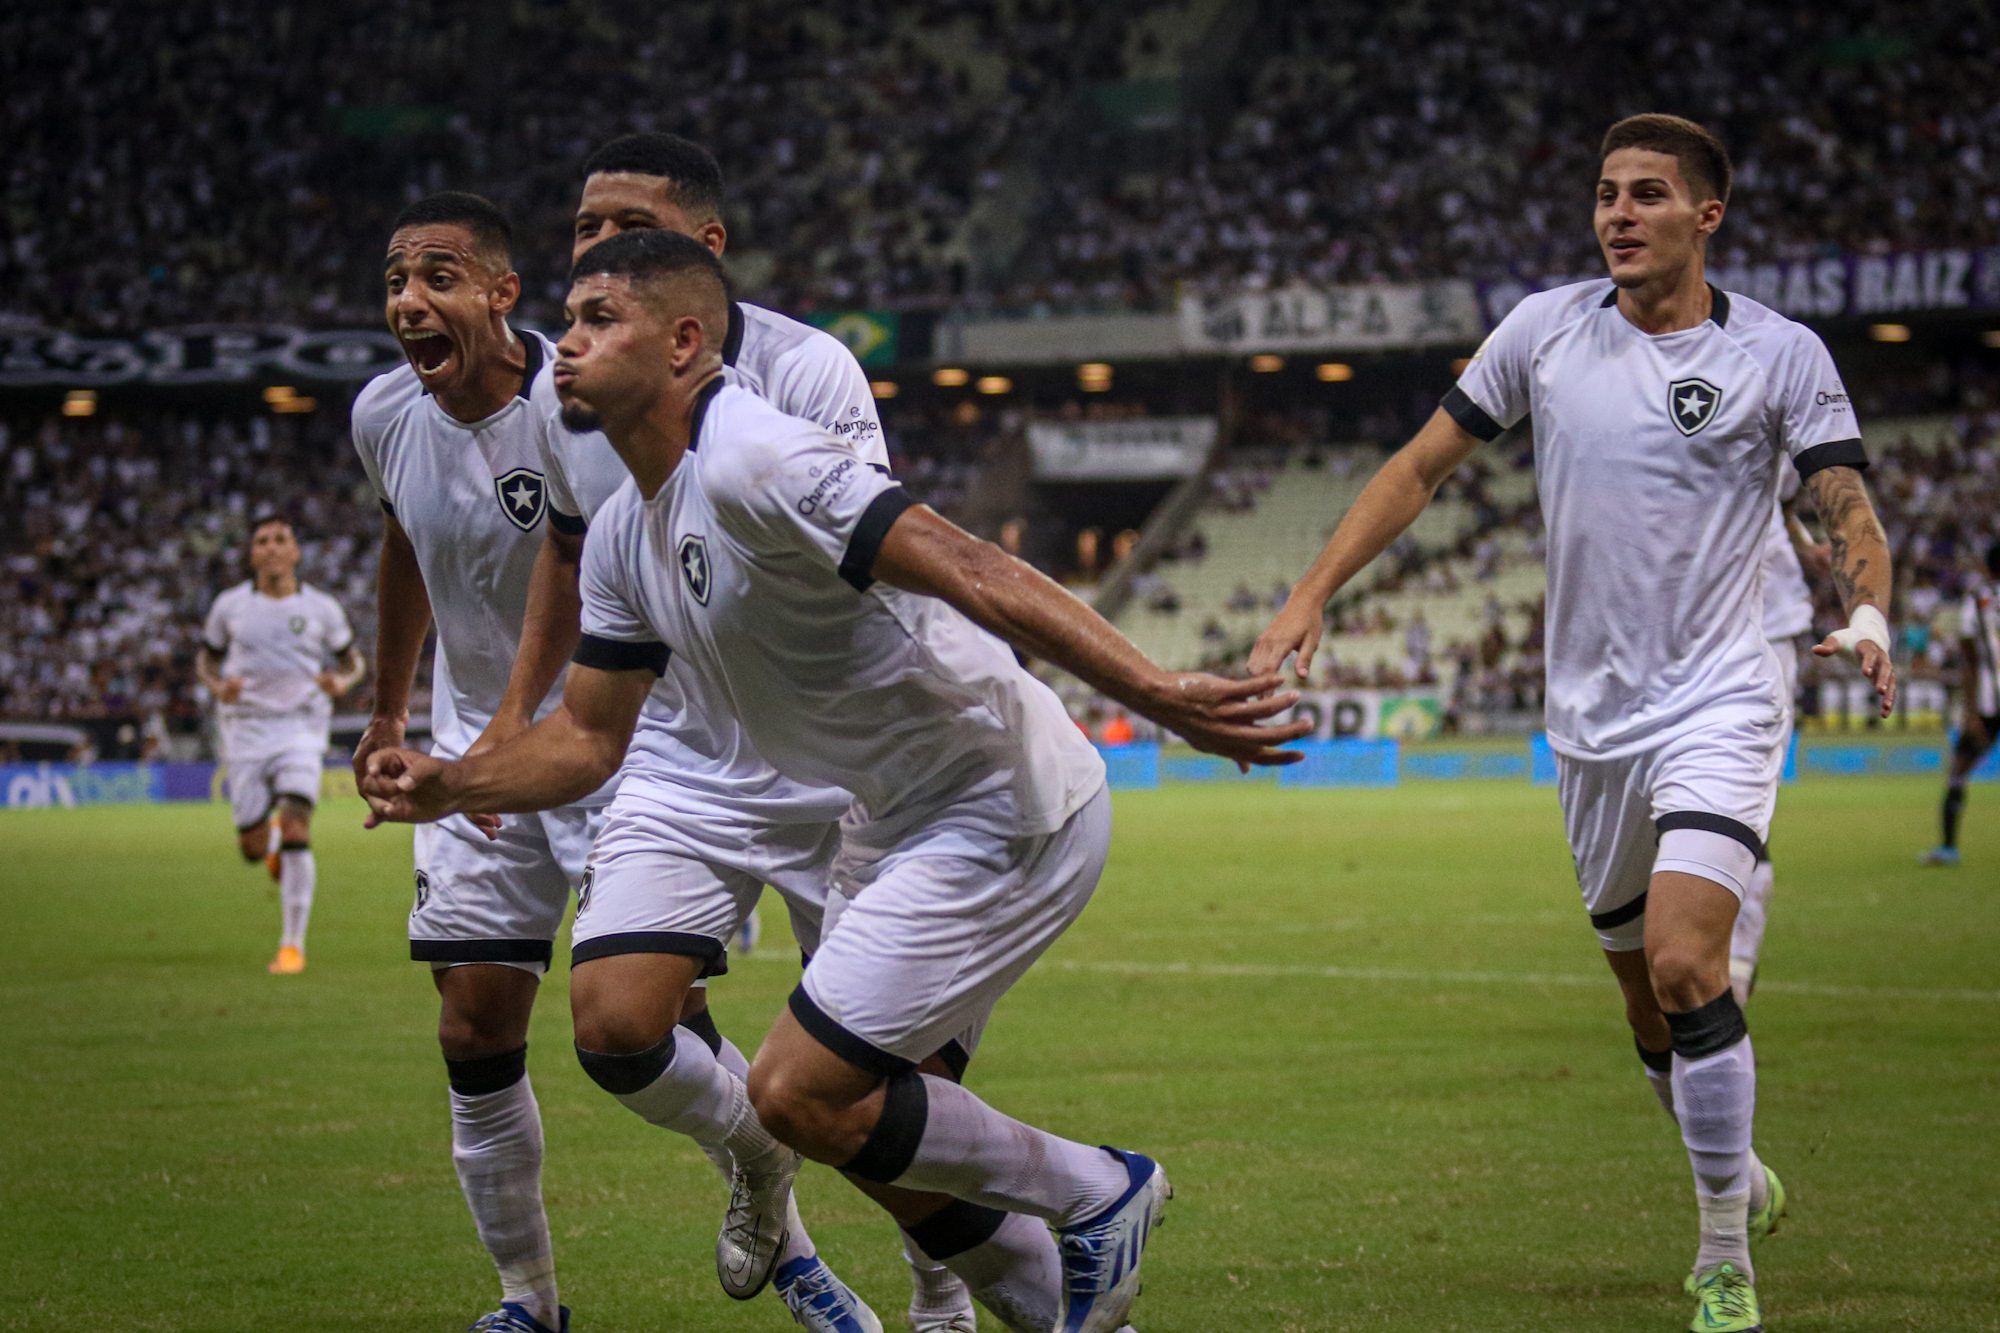 Gols de Ceará x Botafogo: Fogão bate Ceará e vence a primeira no Campeonato Brasileiro